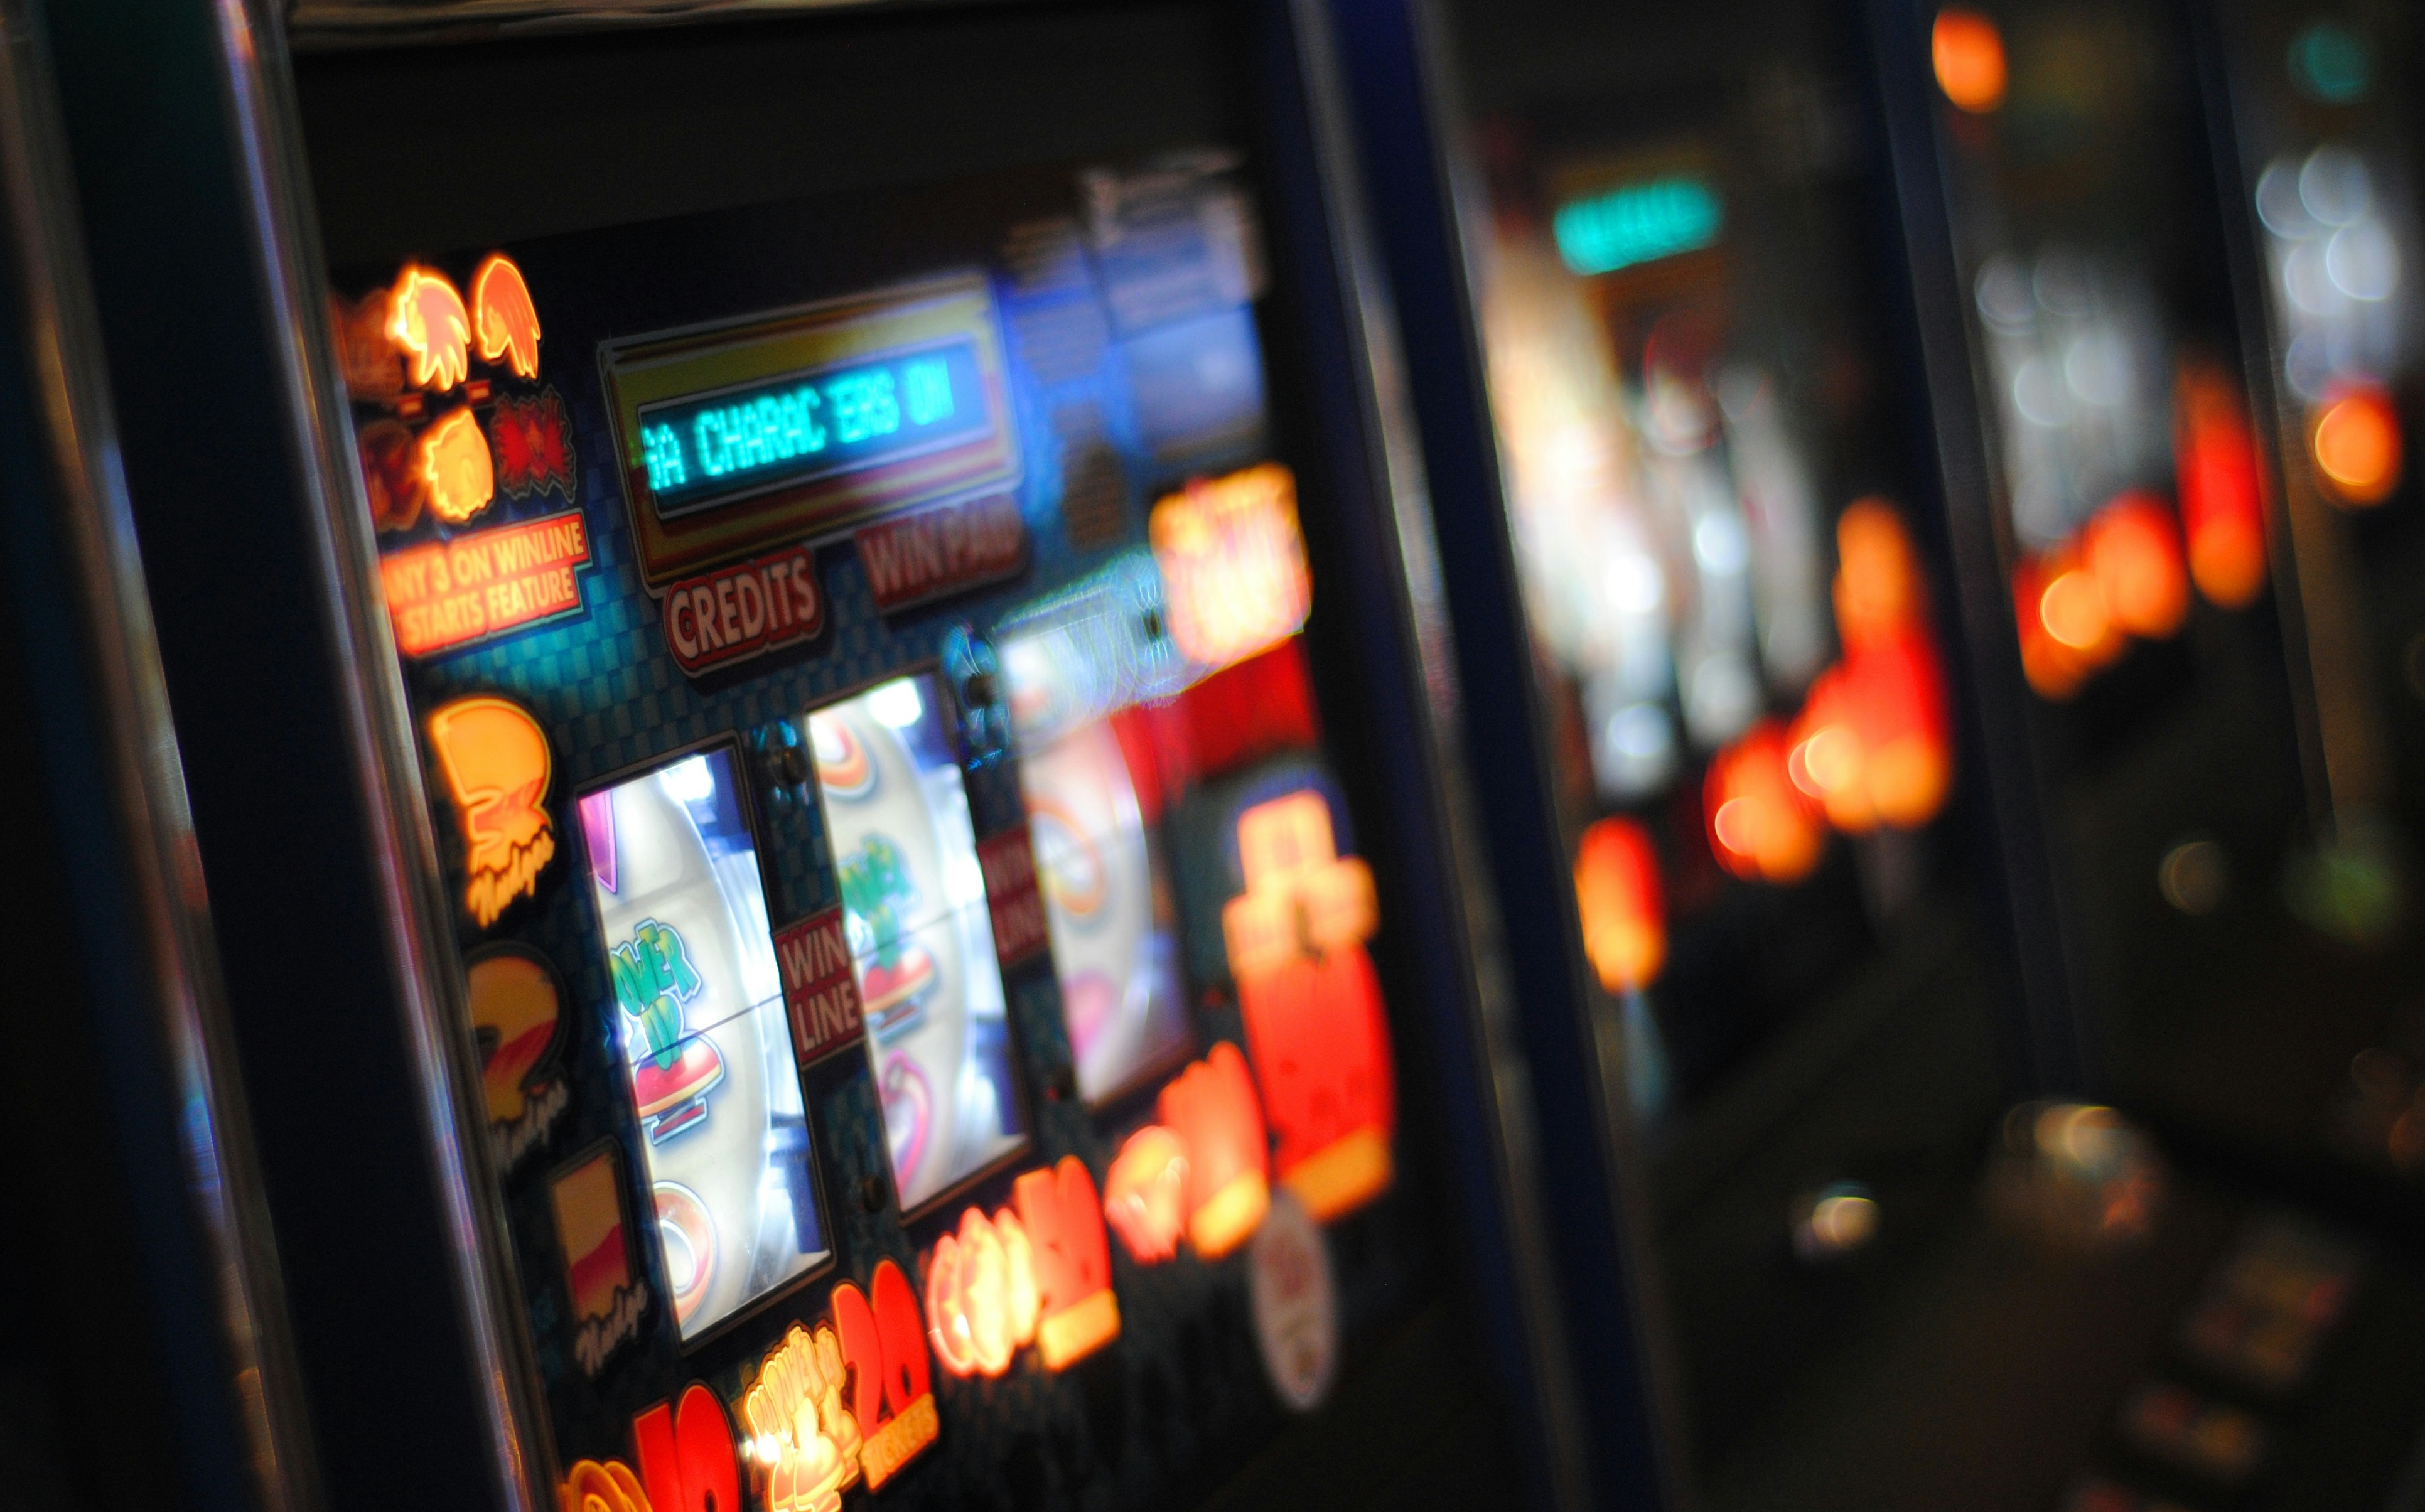 За незаконную организацию азартных игр осуждены два жителя Йошкар-Олы